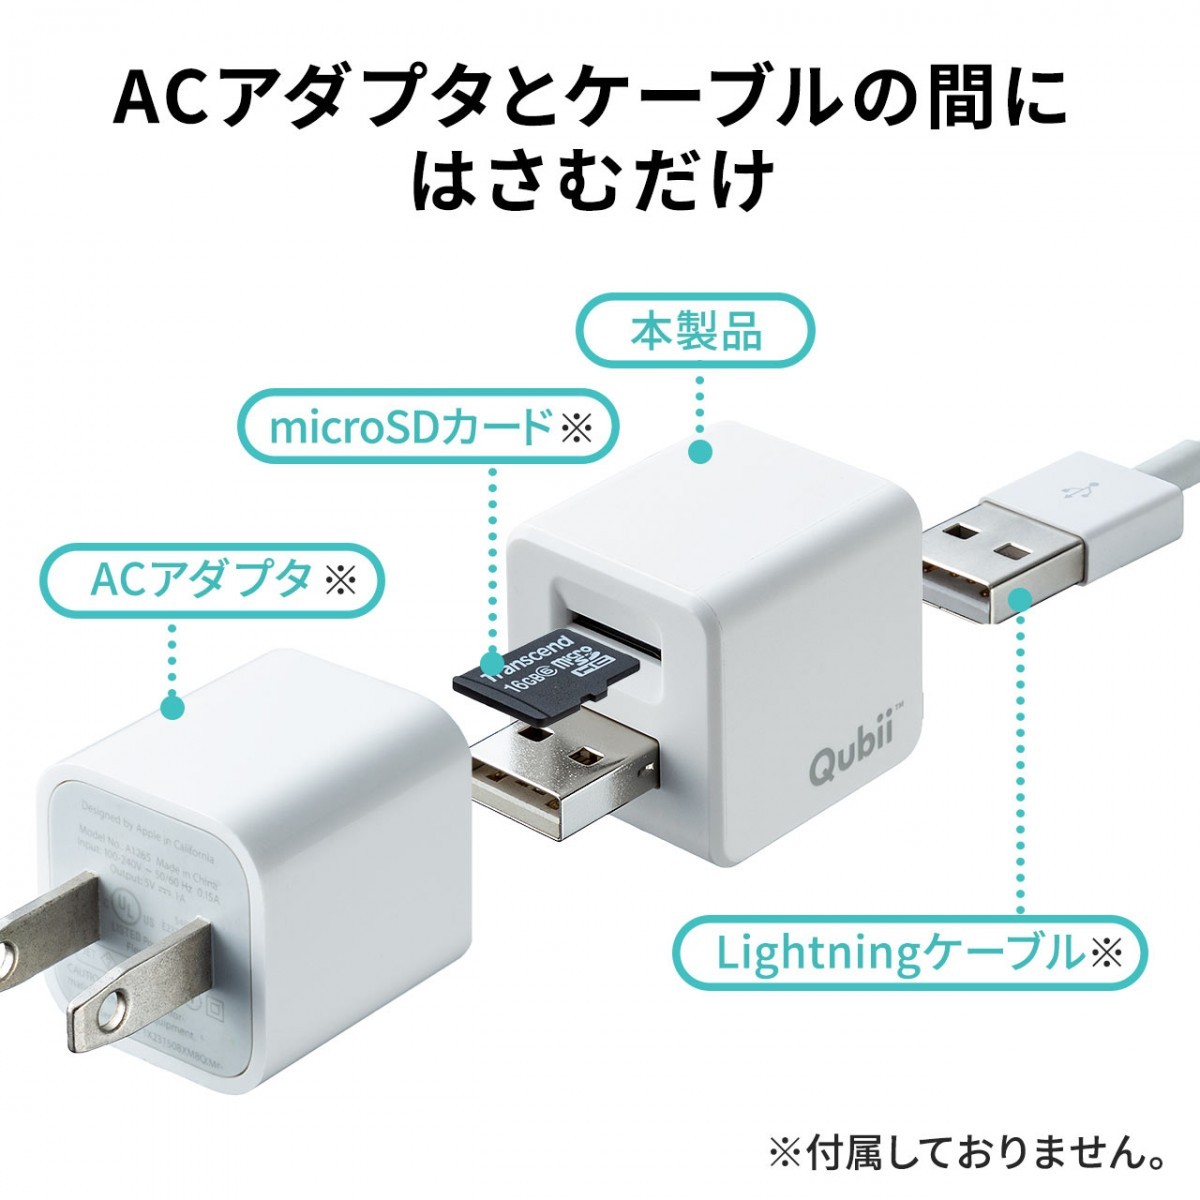 qubii iPhoneバックアップ iPadバックアップ iPhoneカードリーダー 自動 microSD 充電 カードリーダ ライタ qubii データ保存 400-ADRIP010W